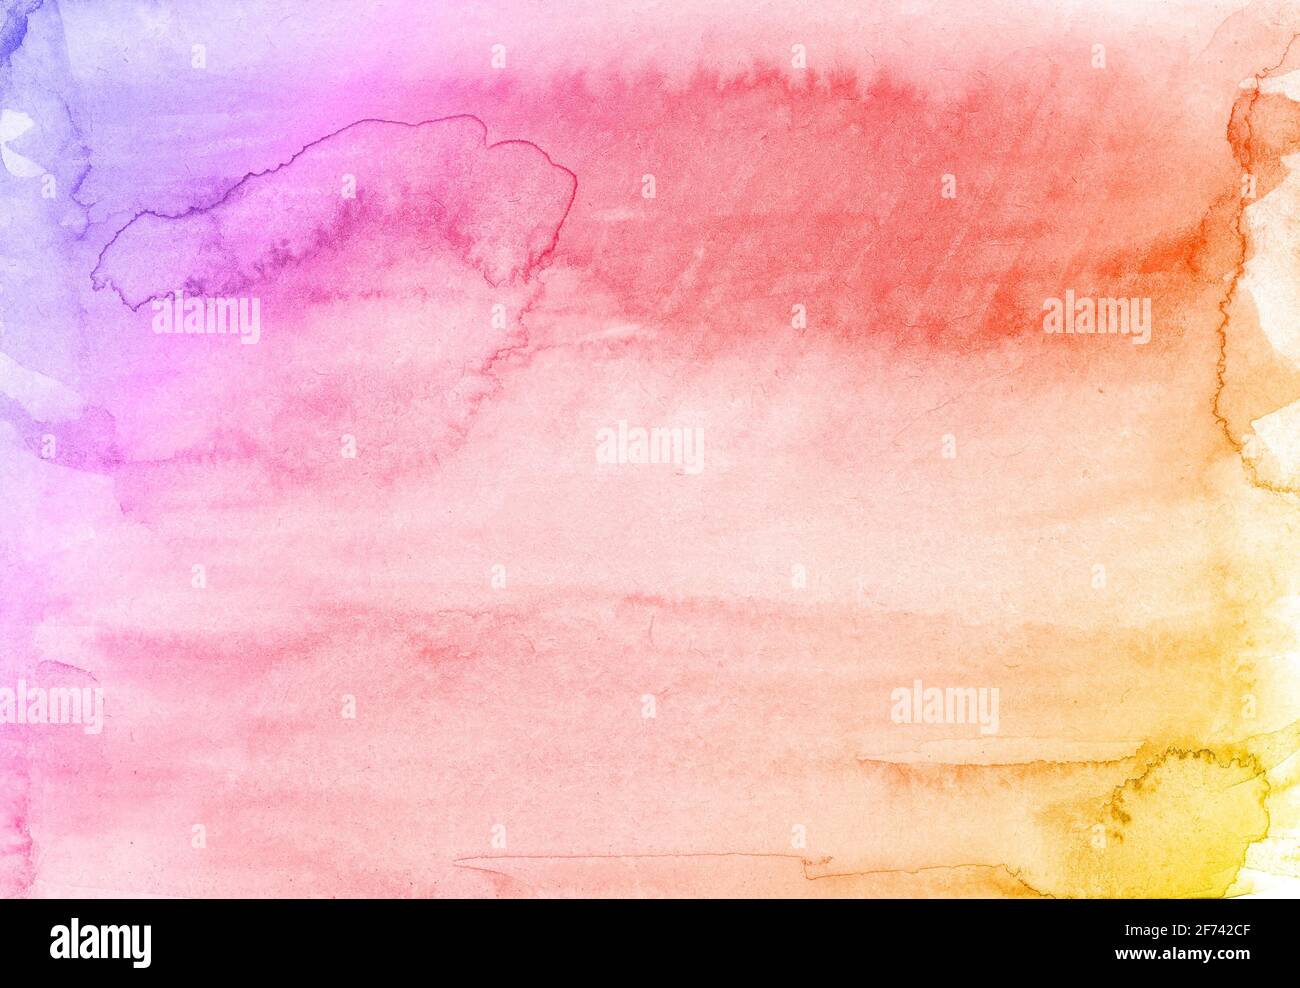 Farbenfroher Aquarell-Hintergrund mit abstraktem Sonnenuntergang oder Ostersonnenaufgangshimmel Mit geschwollenen Farben spritzen Wolken in hell gemalten Farben Stockfoto